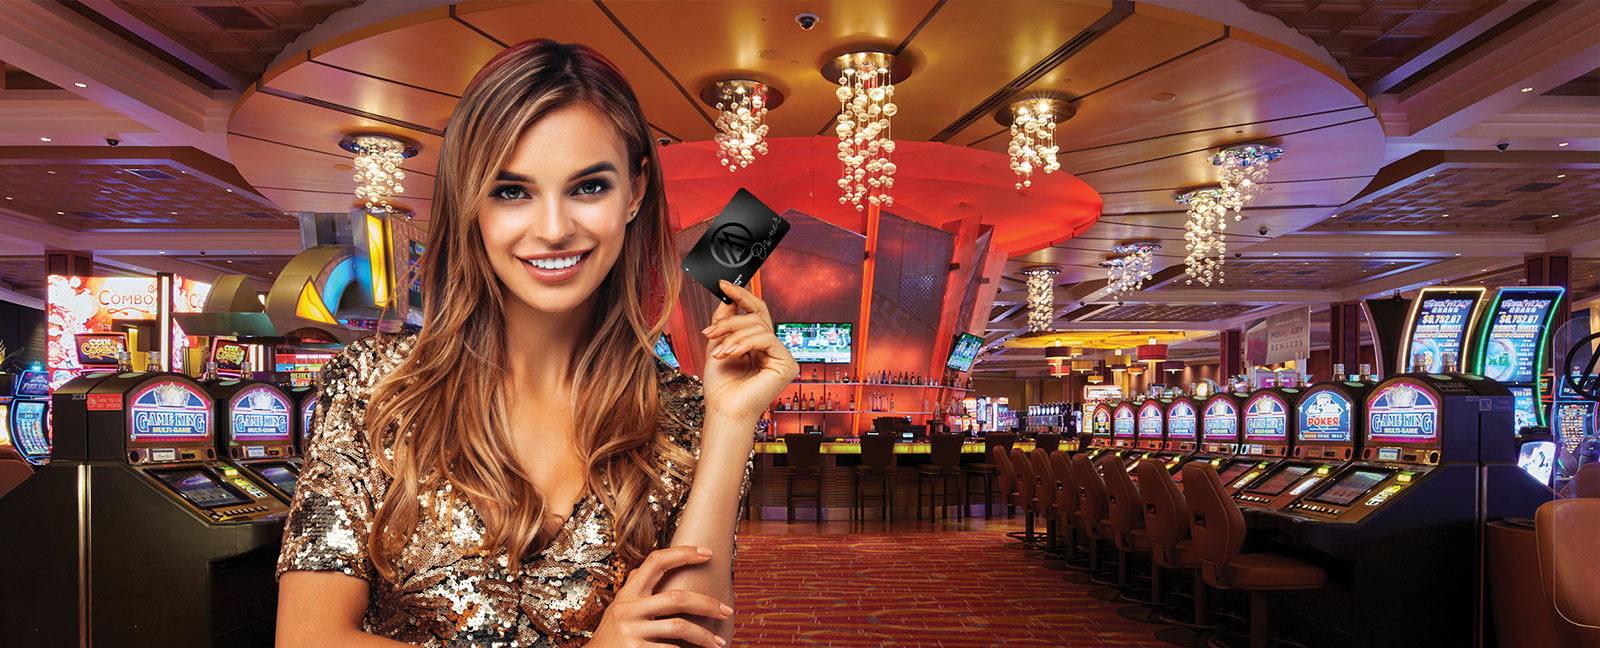 poconos casino players card slots reward